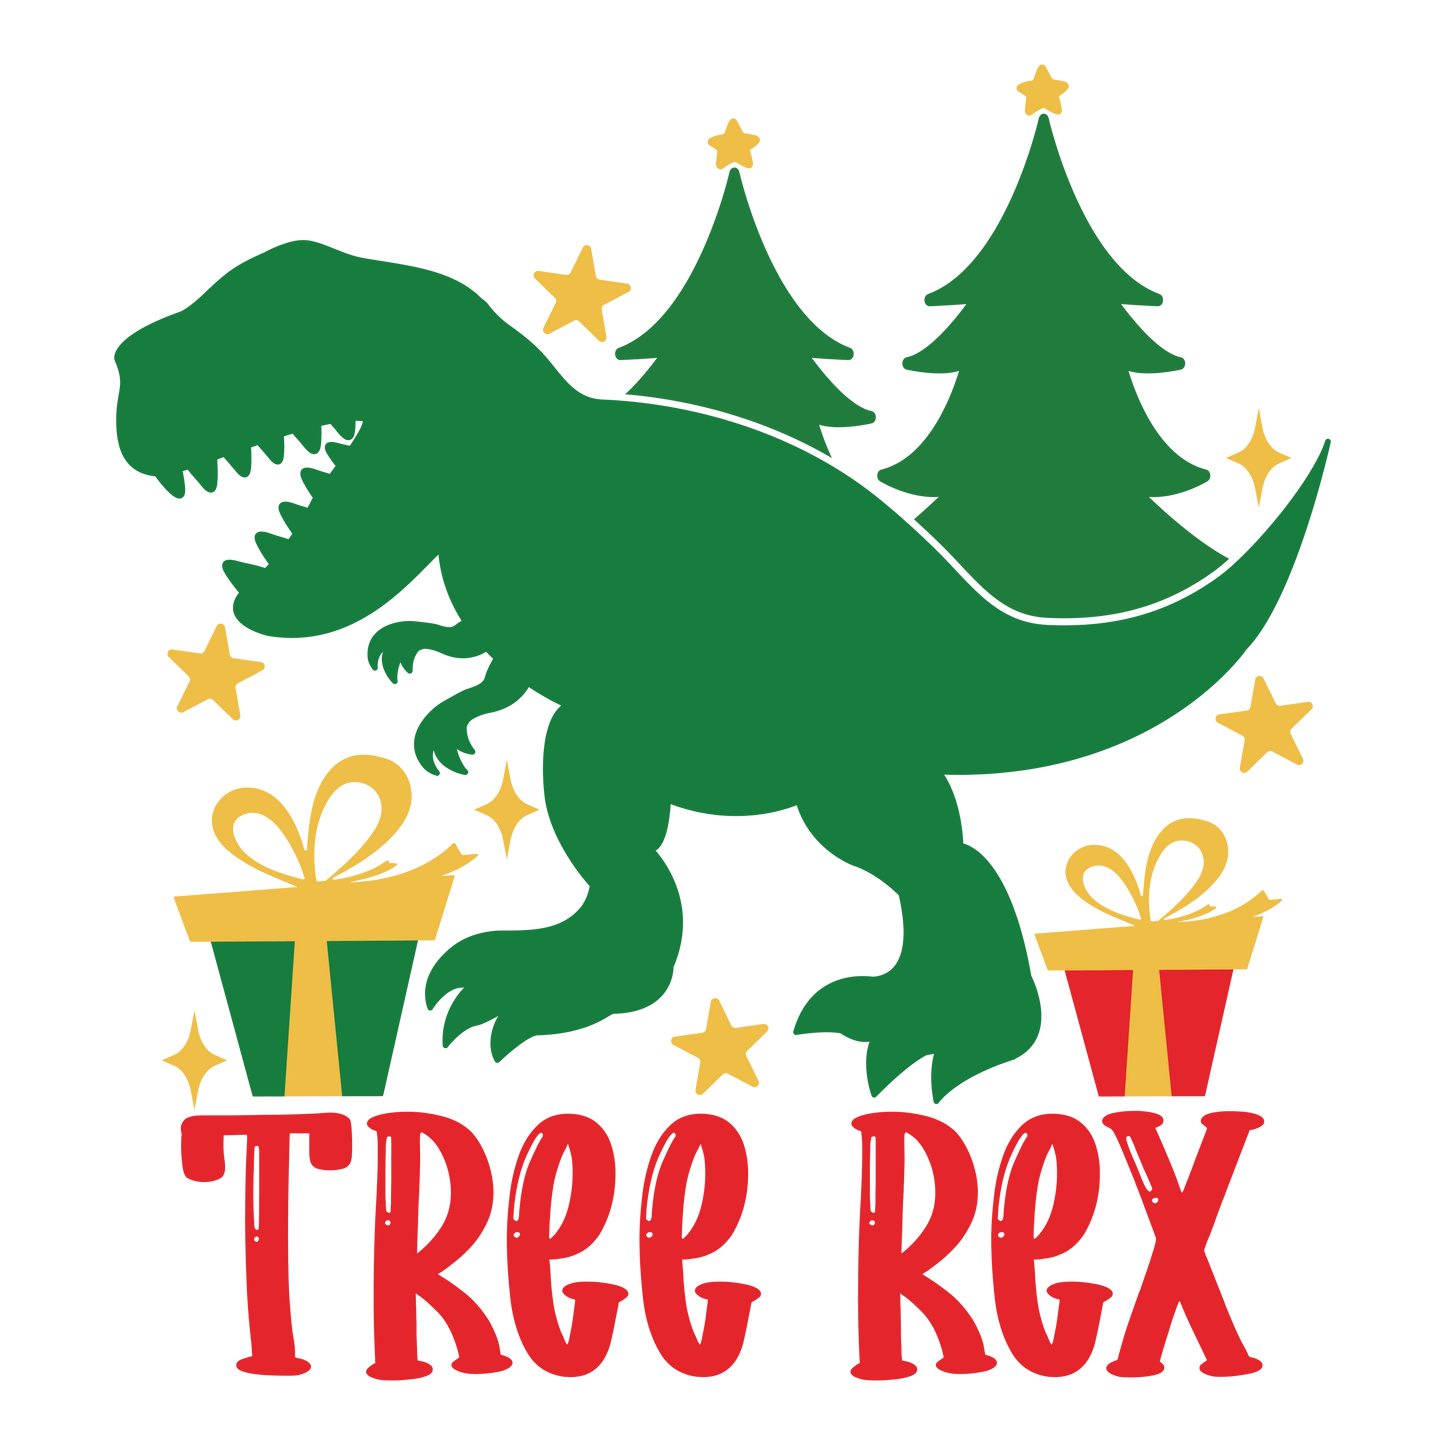 TREE REX